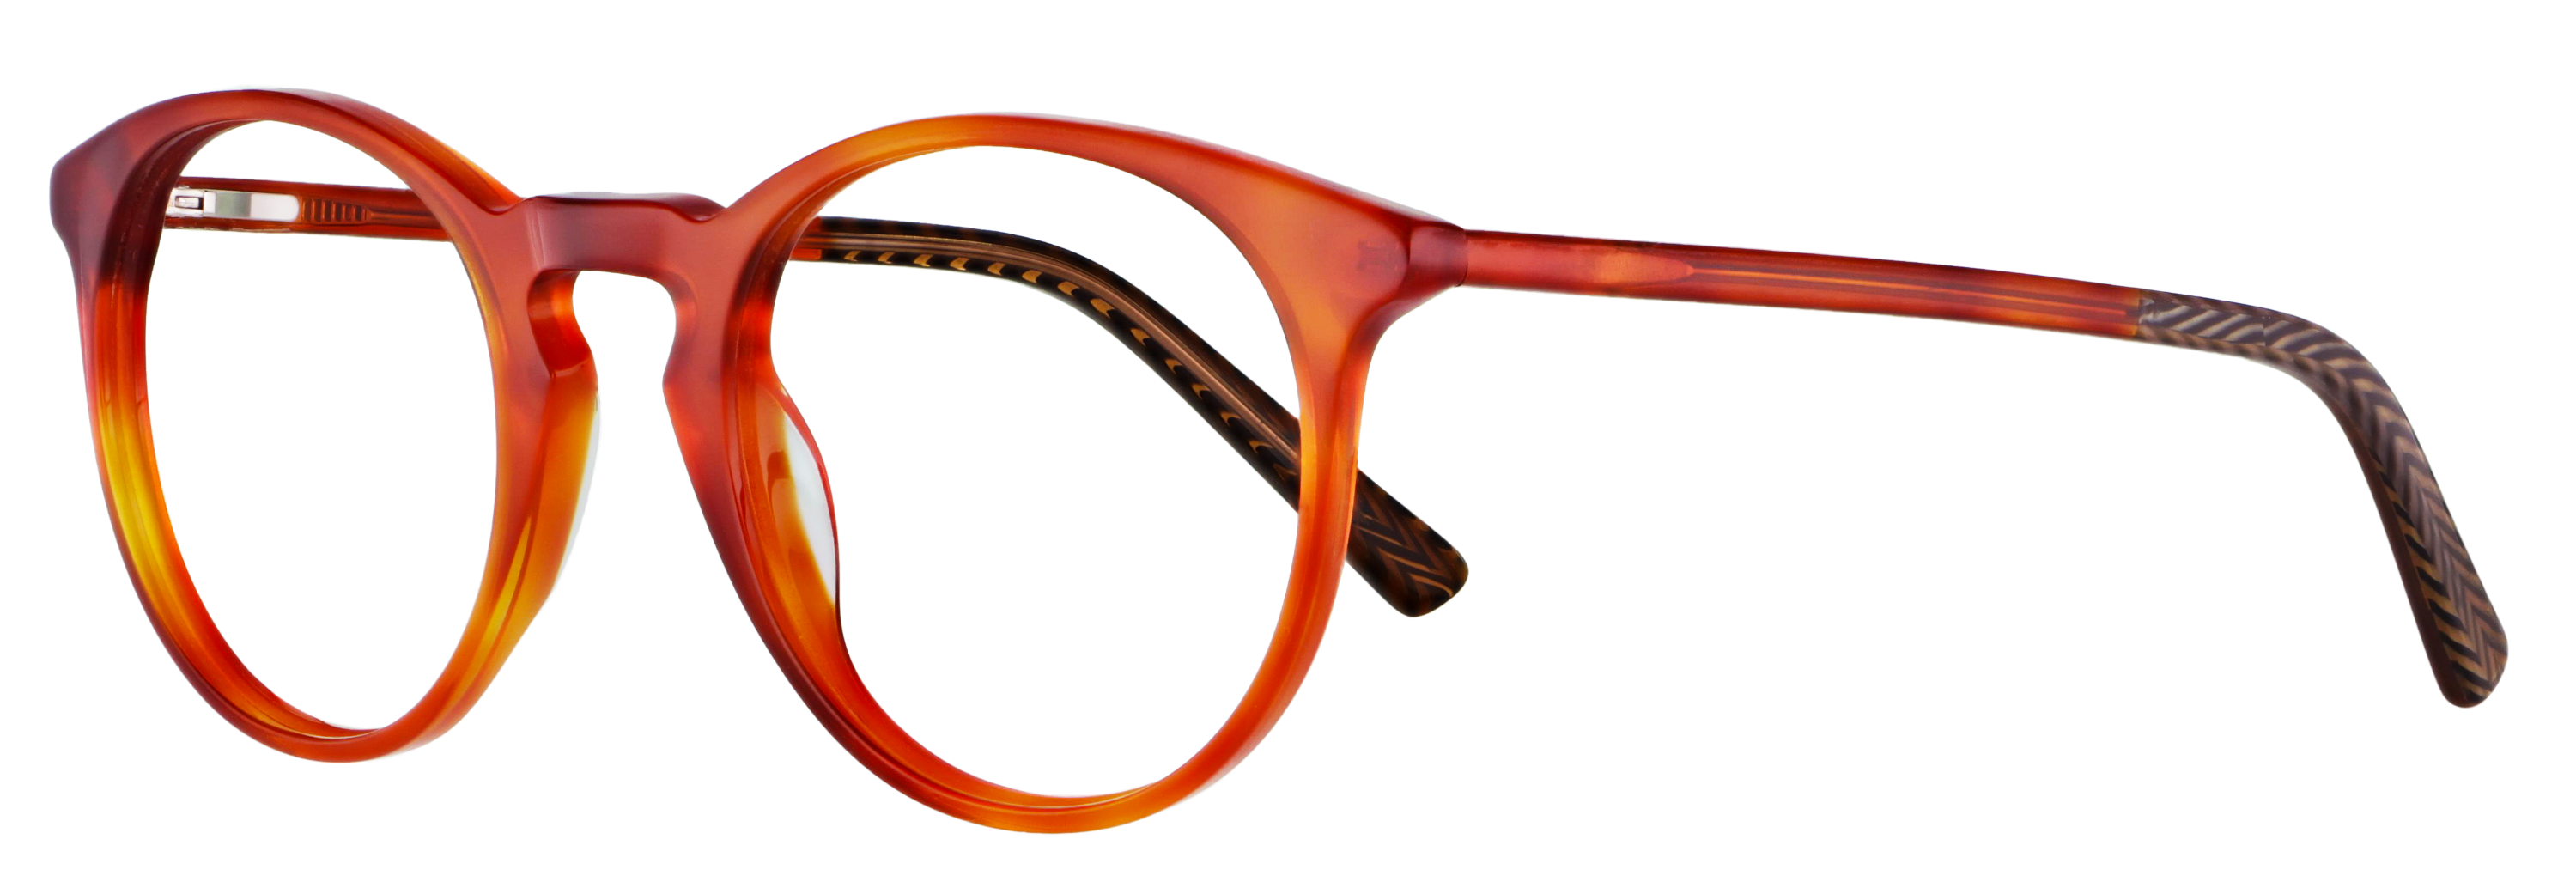 Das Bild zeigt die Korrektionsbrille 140511 von der Marke Abele Optik in rot-orange.